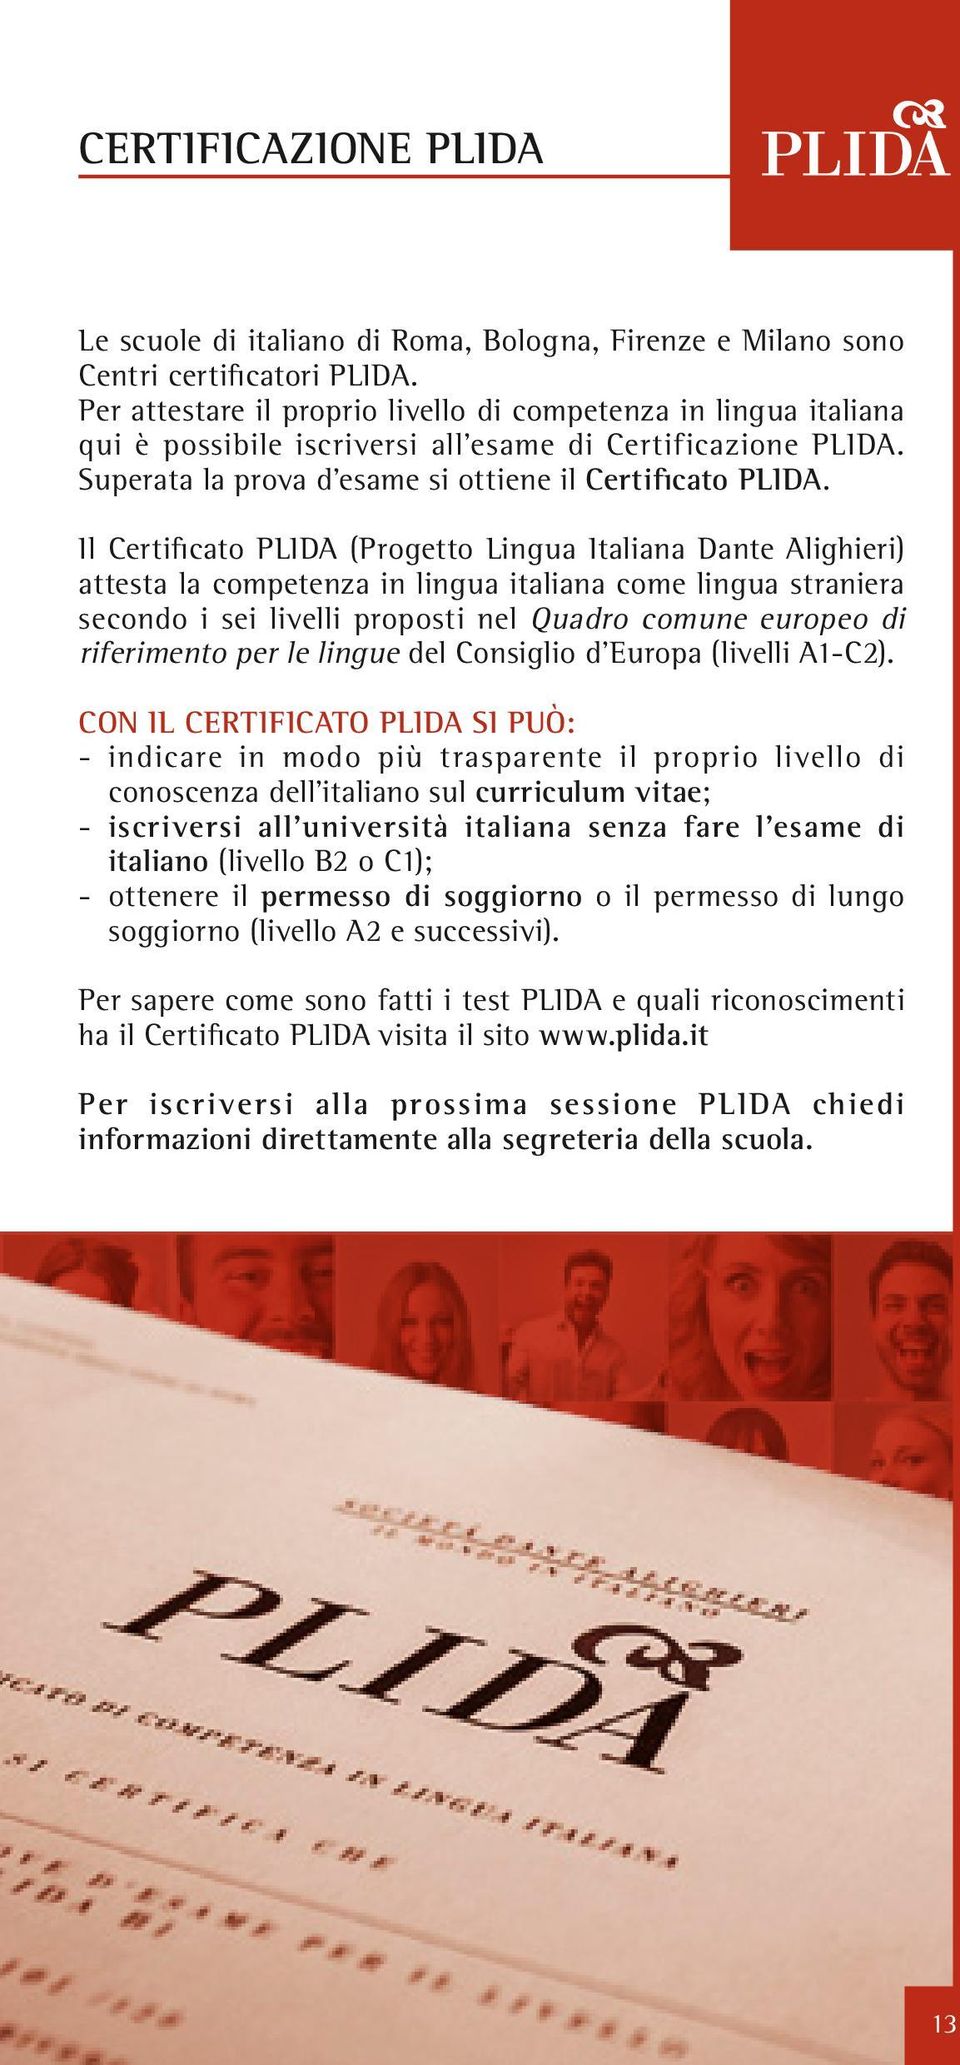 Il Certificato PLIDA (Progetto Lingua Italiana Dante Alighieri) attesta la competenza in lingua italiana come lingua straniera secondo i sei livelli proposti nel Quadro comune europeo di riferimento